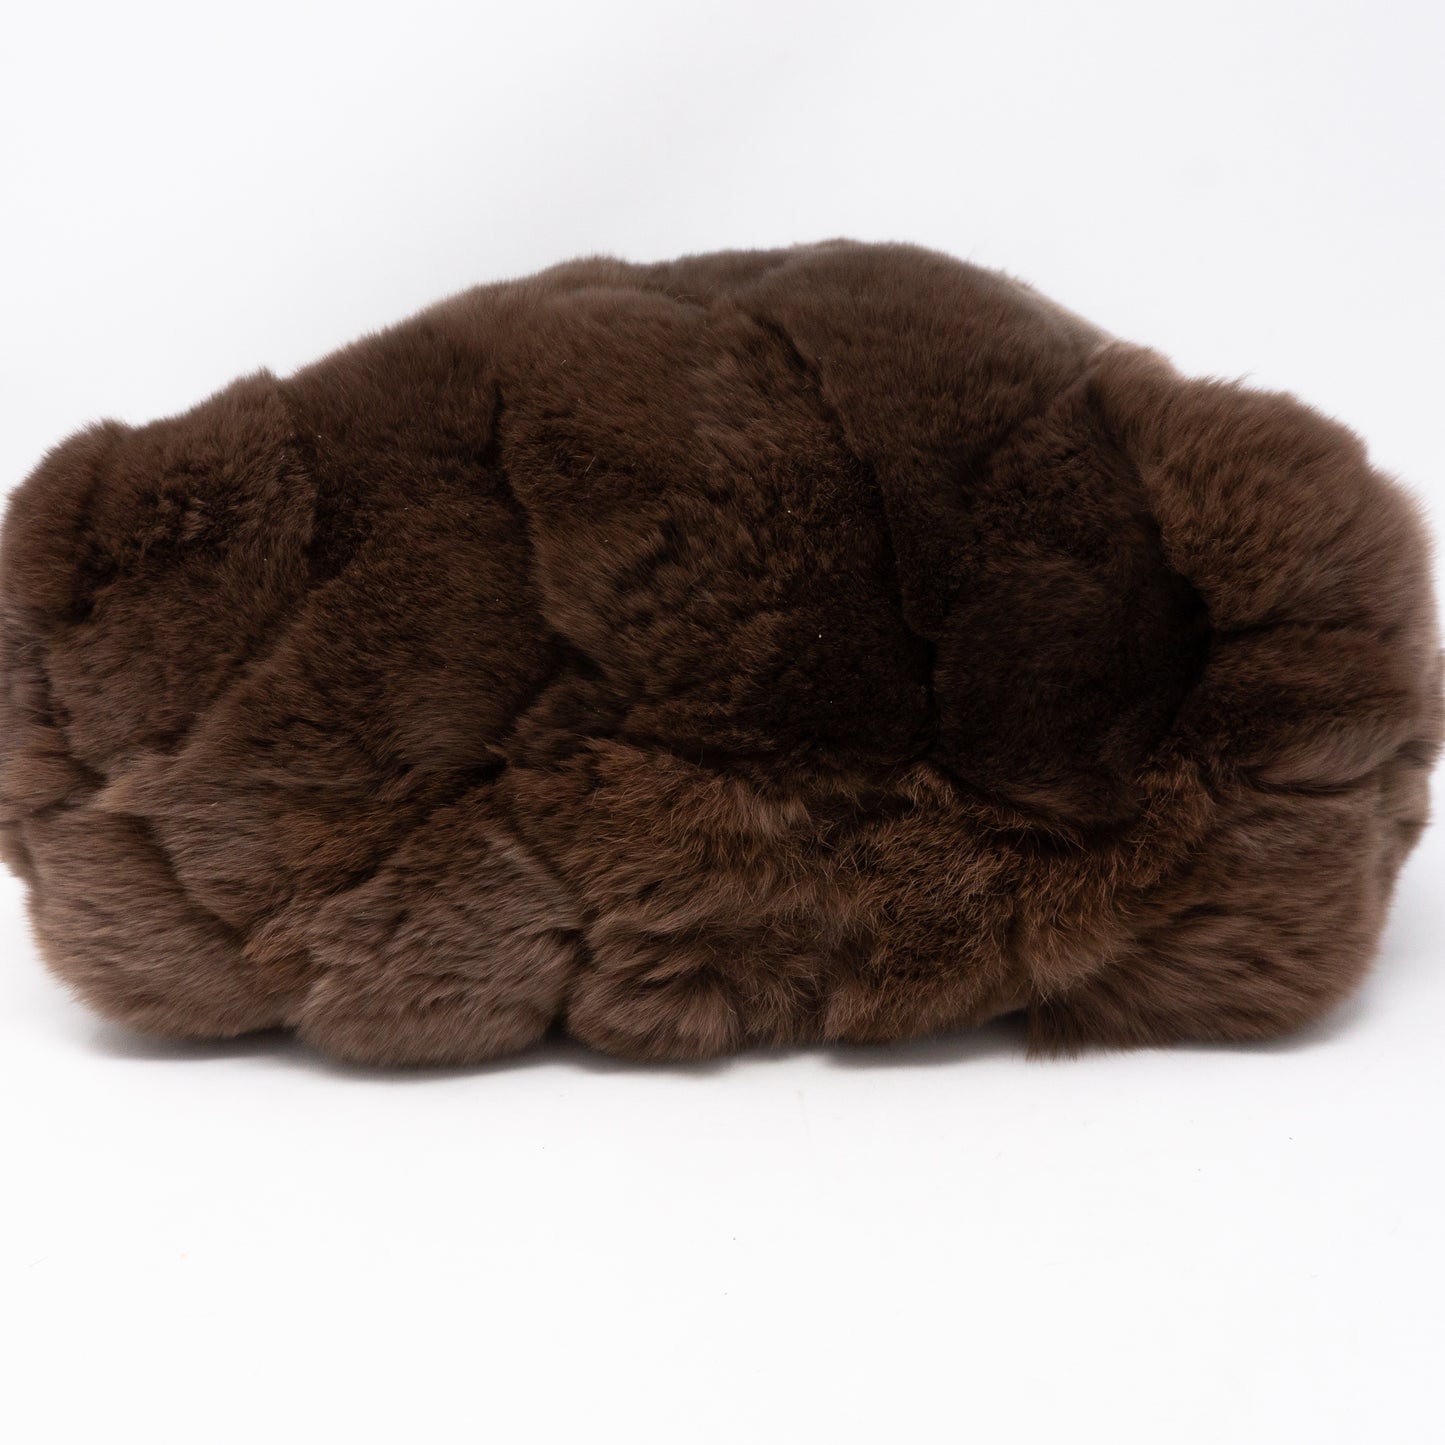 Chain Tote Bag Brown Fur